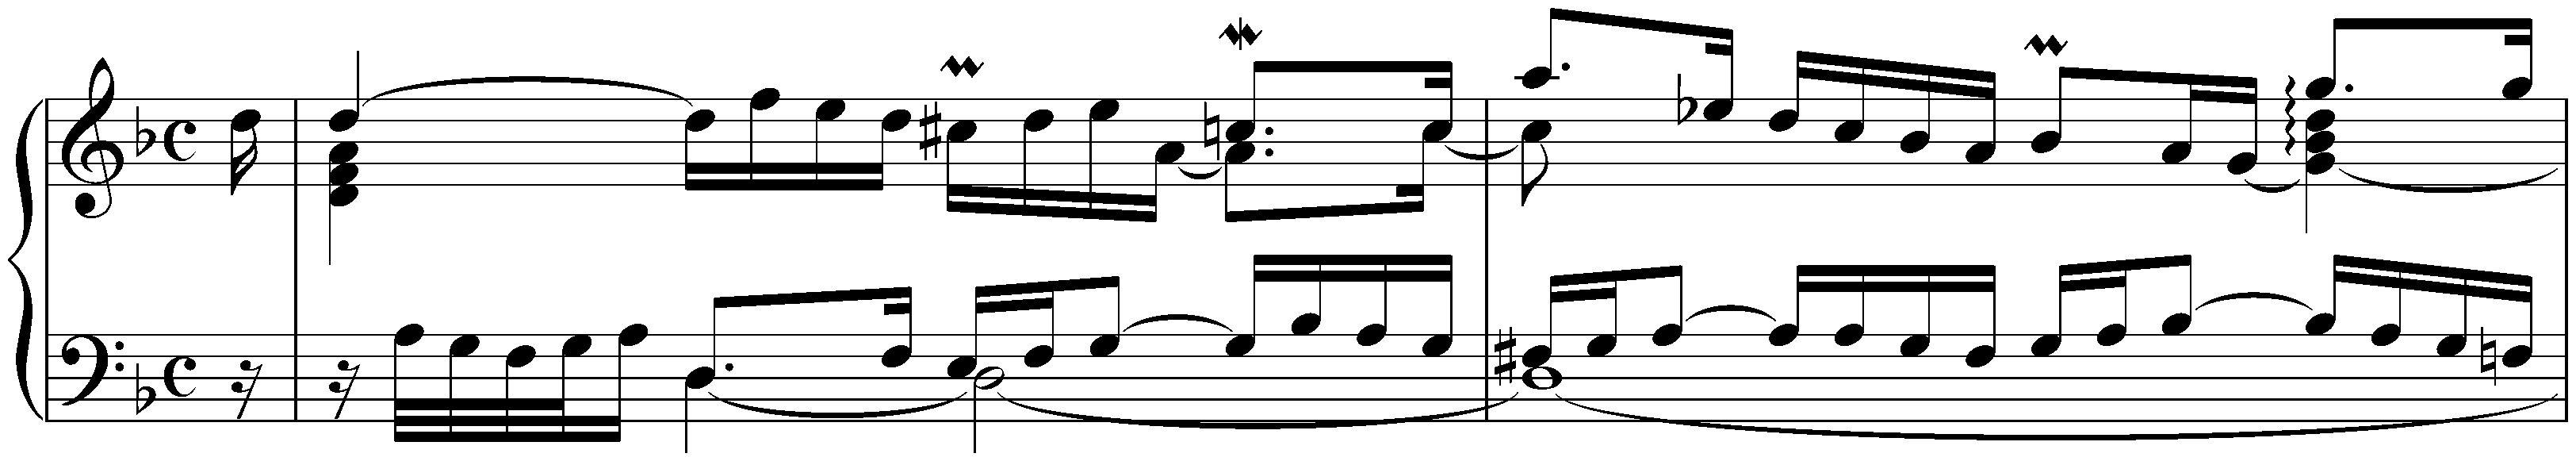 English Suite no. 6 in D minor, BWV 811; 2. Allemande